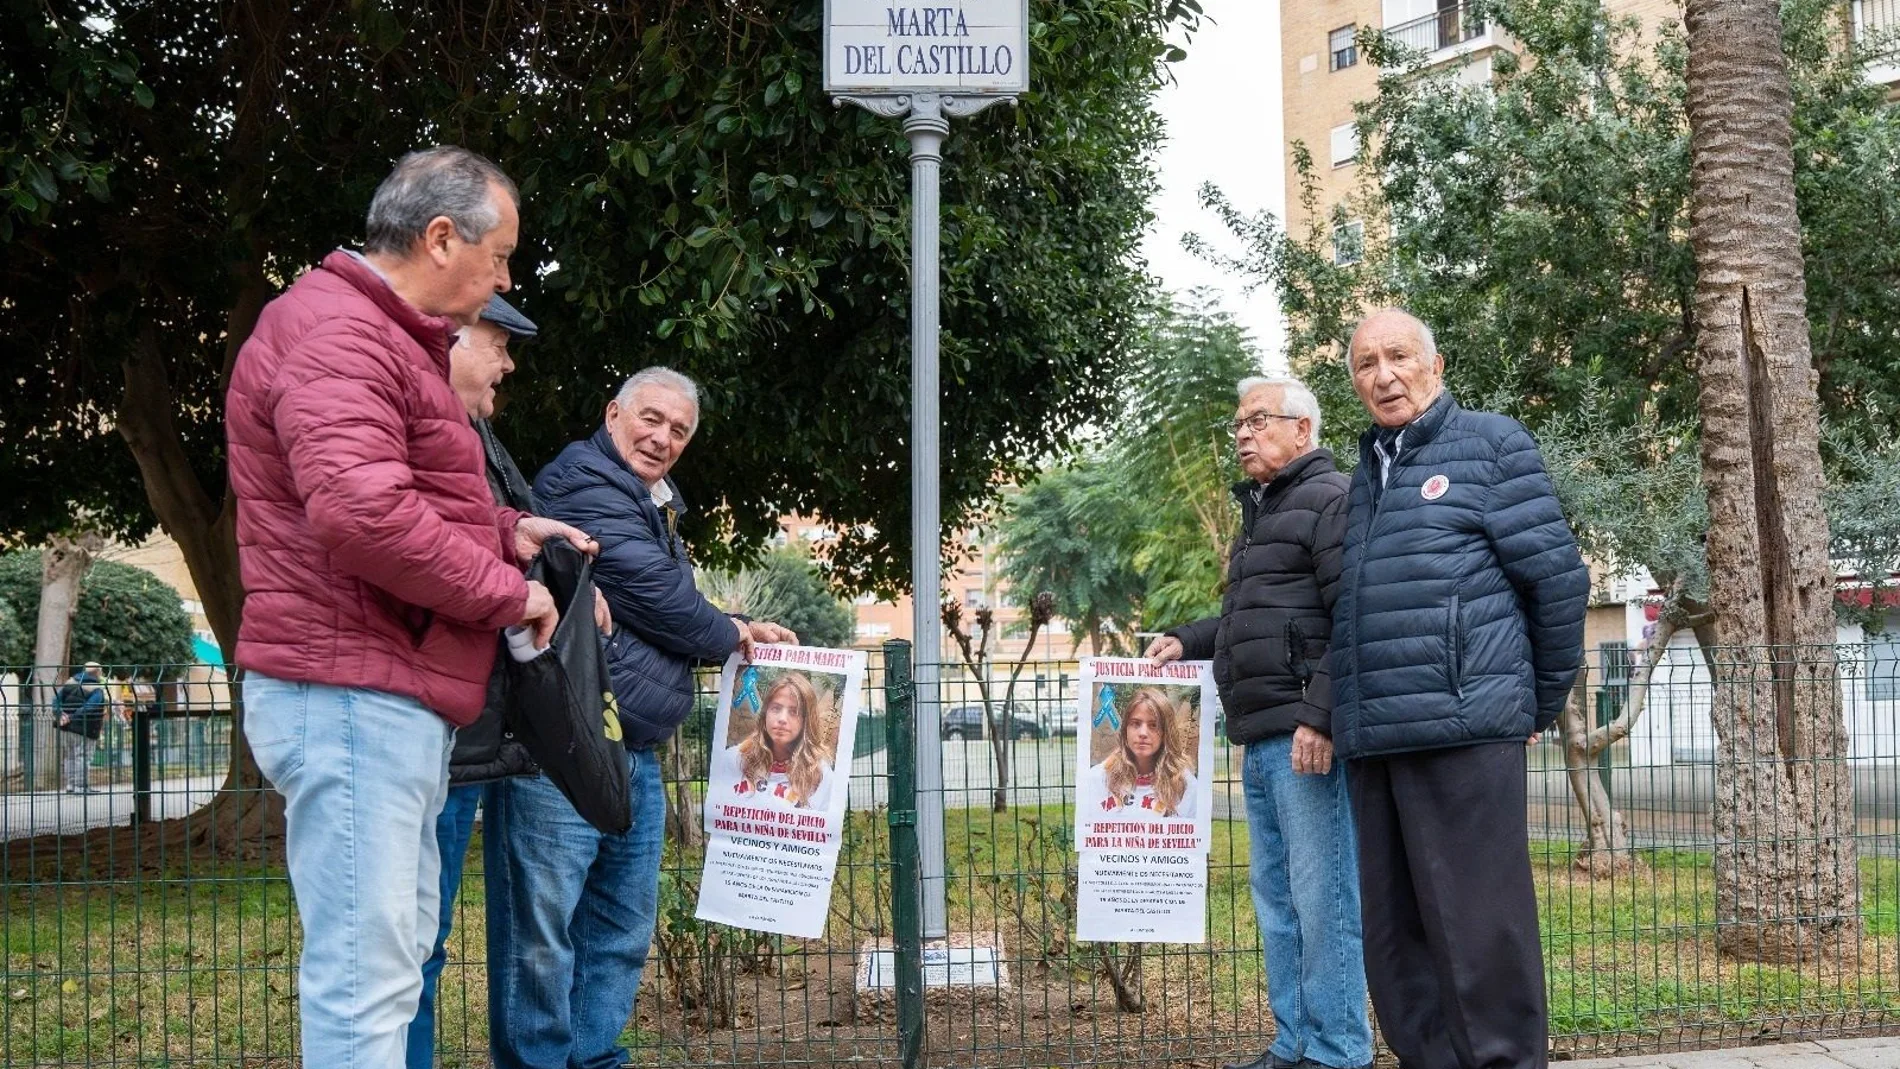 El abuelo de Marta del Castillo encabeza la pegada de carteles